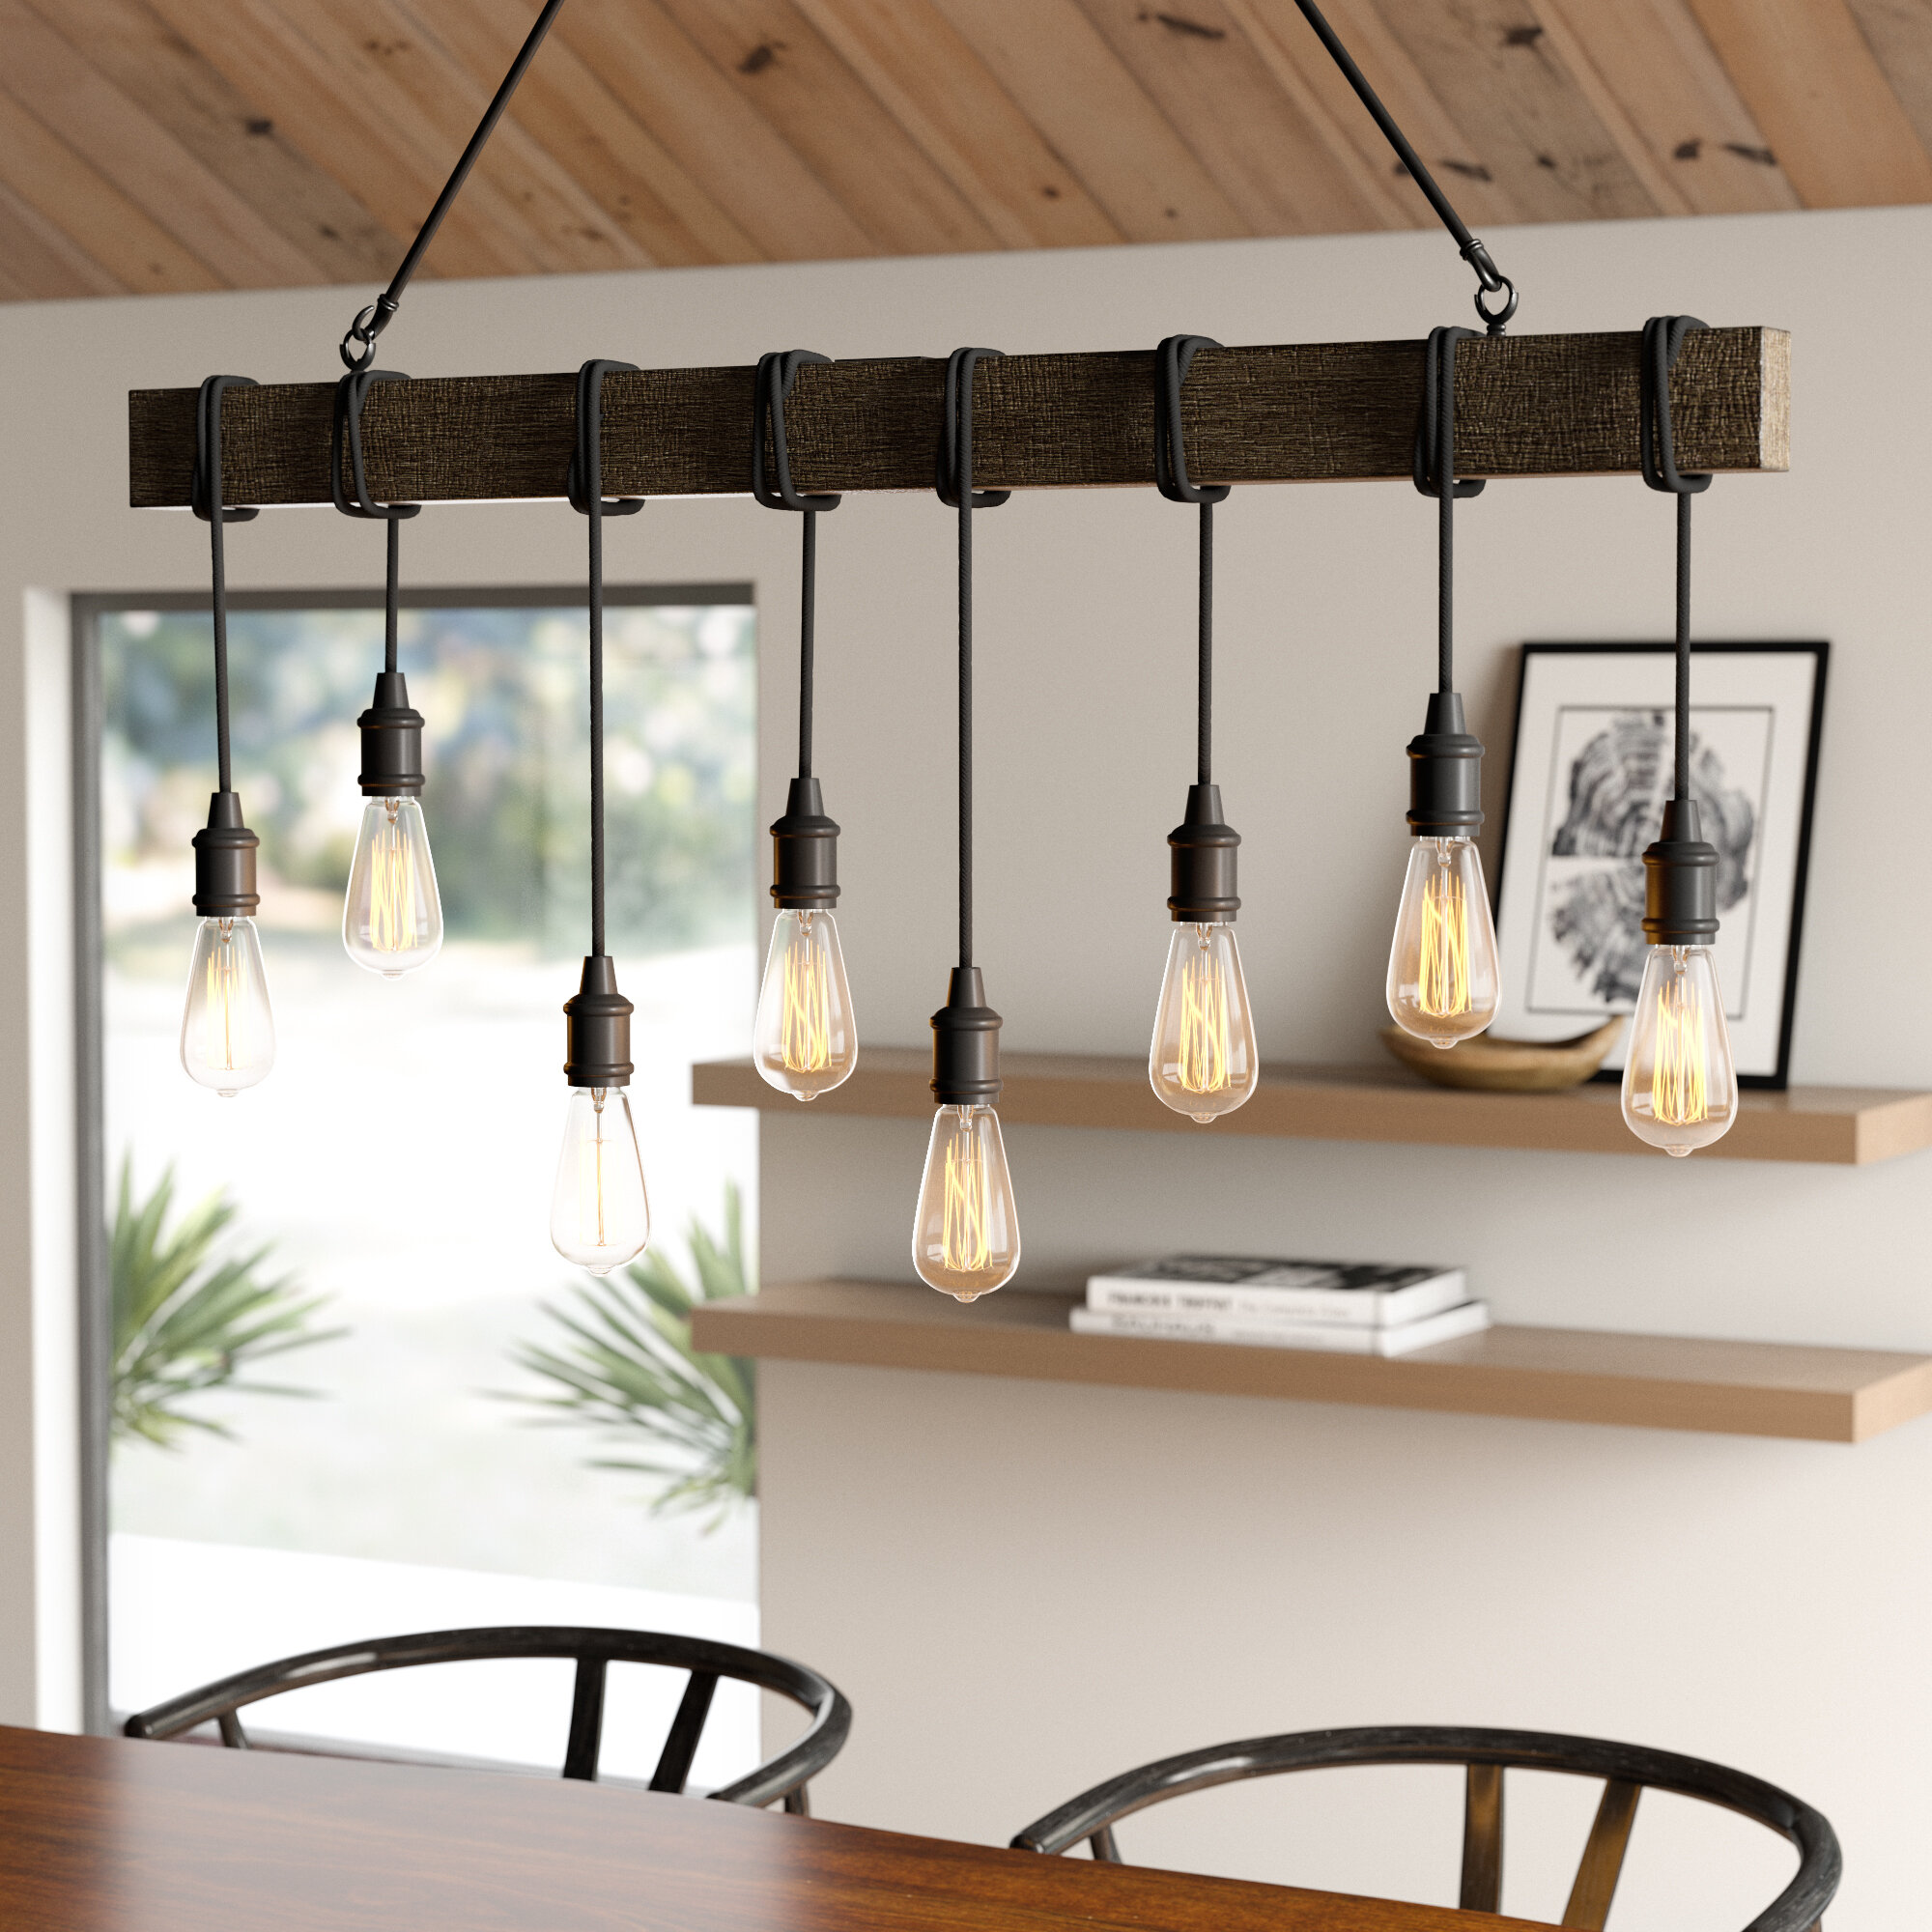 Светильники потолочные подвесные для кухни над столом на кухне фото